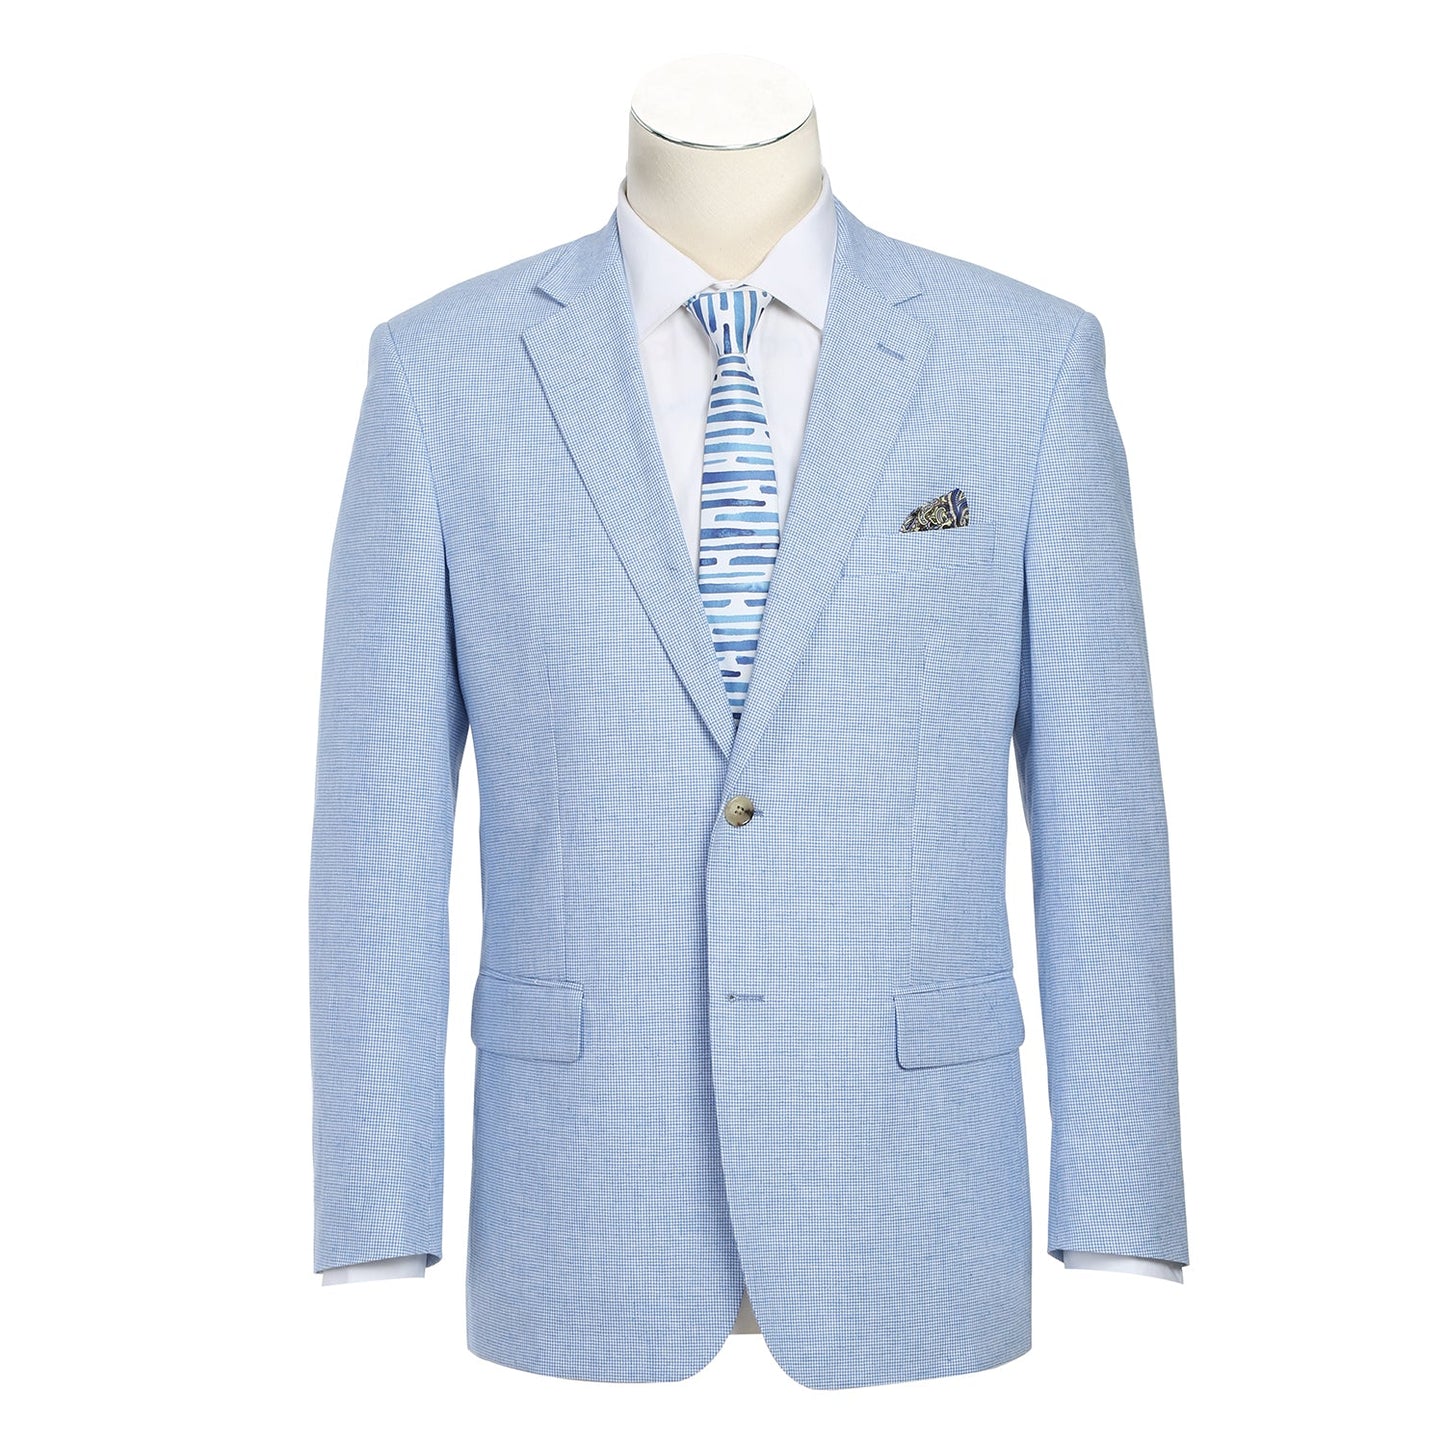 610-6 Men's Classic Fit Linen/Cotton Blend Light Blue Check Sport Coat